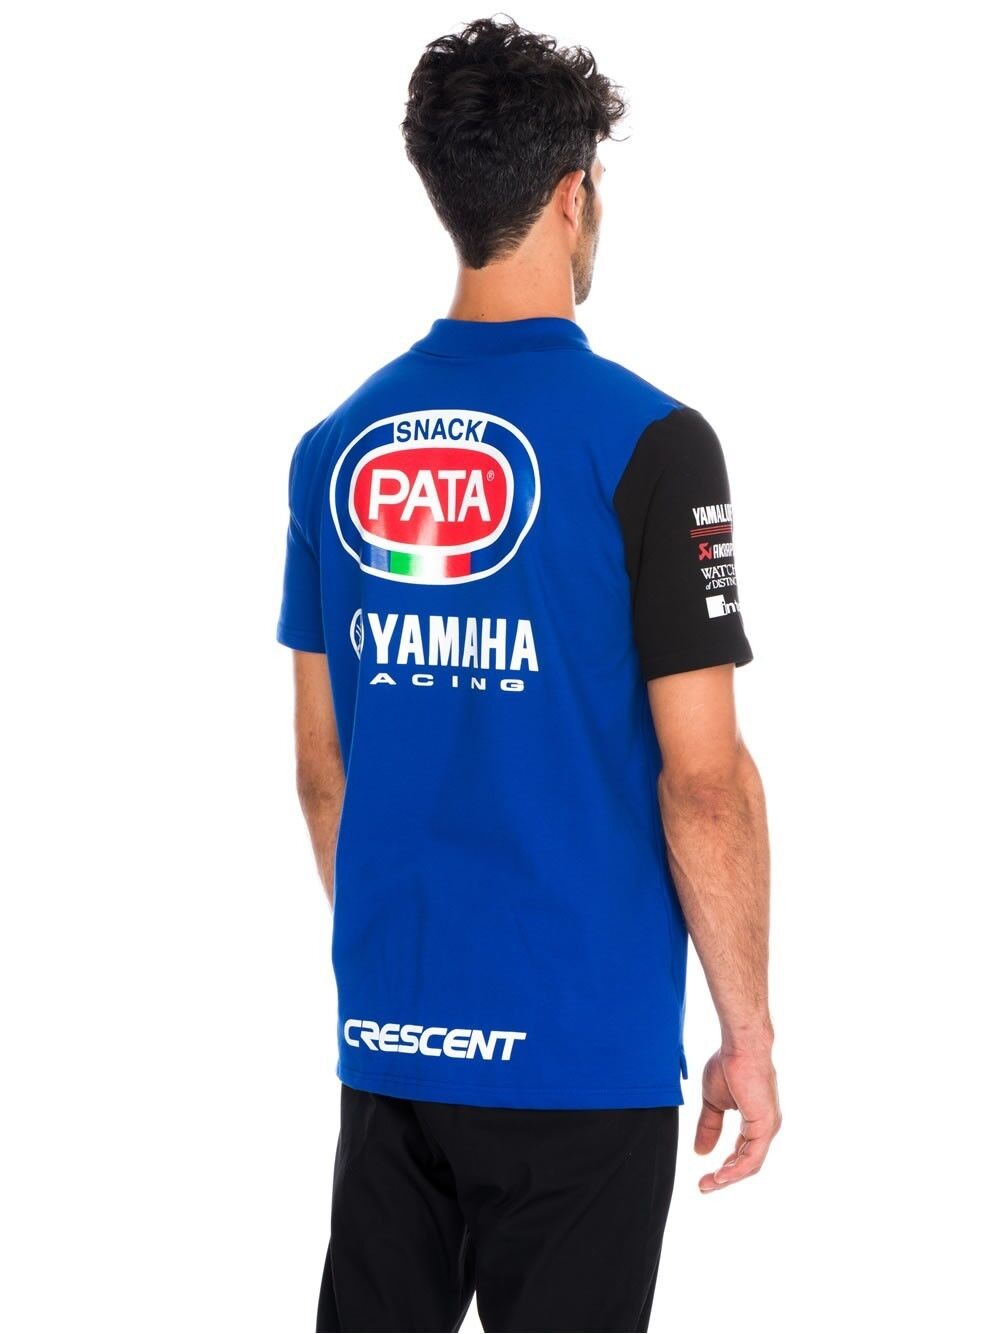 Official Pata Yamaha Racing Team Polo Shirt - 16 17007